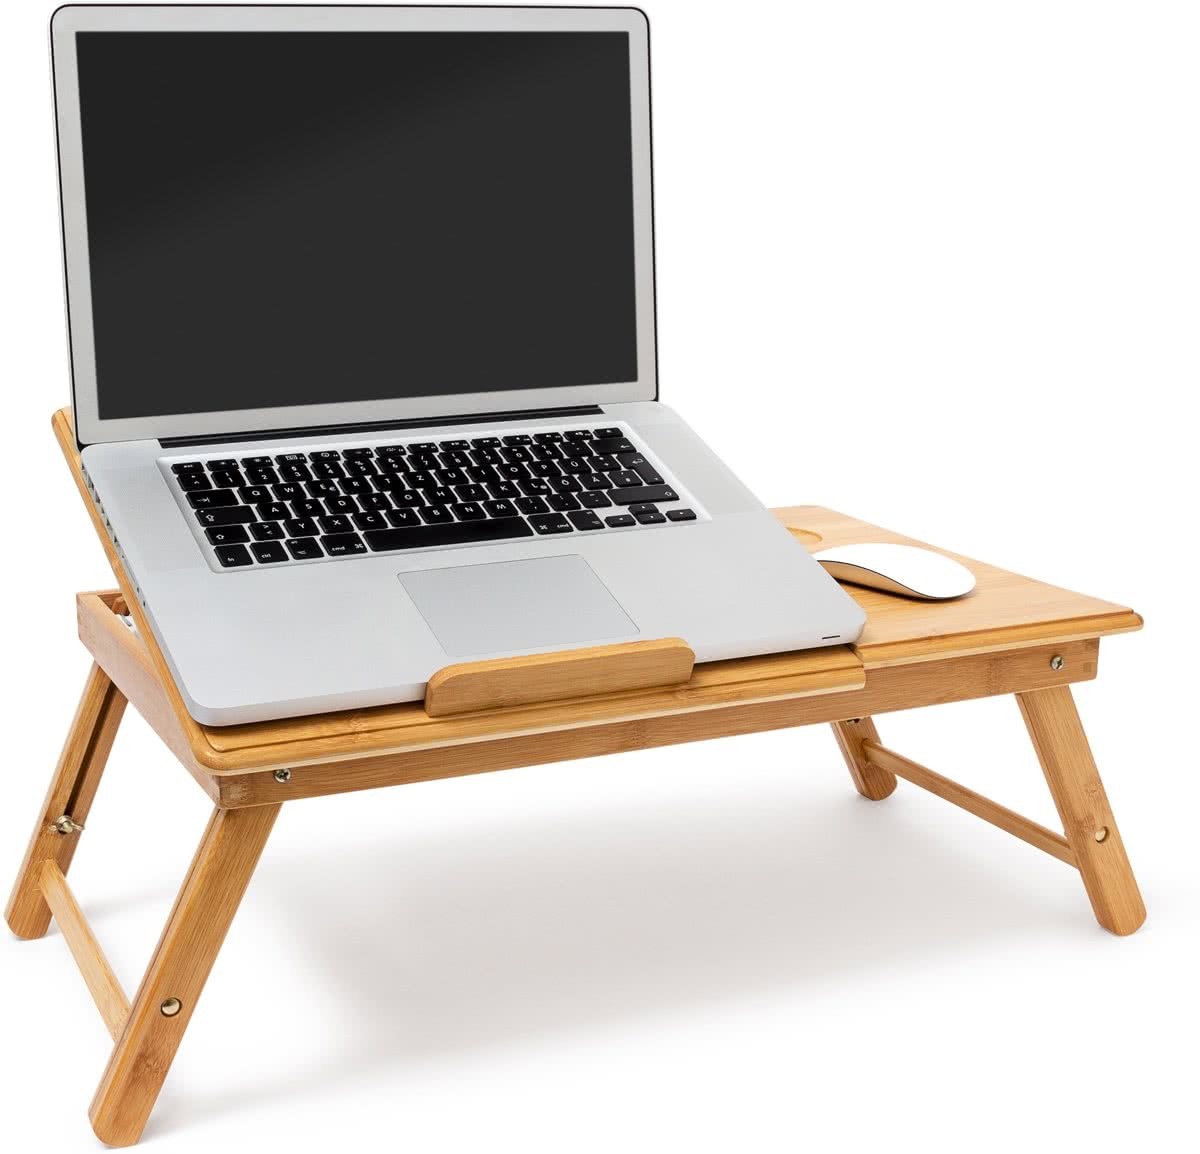 Relaxdays laptoptafel bamboe, bedtafel, bijzettafel laptop standaard verstelbaar